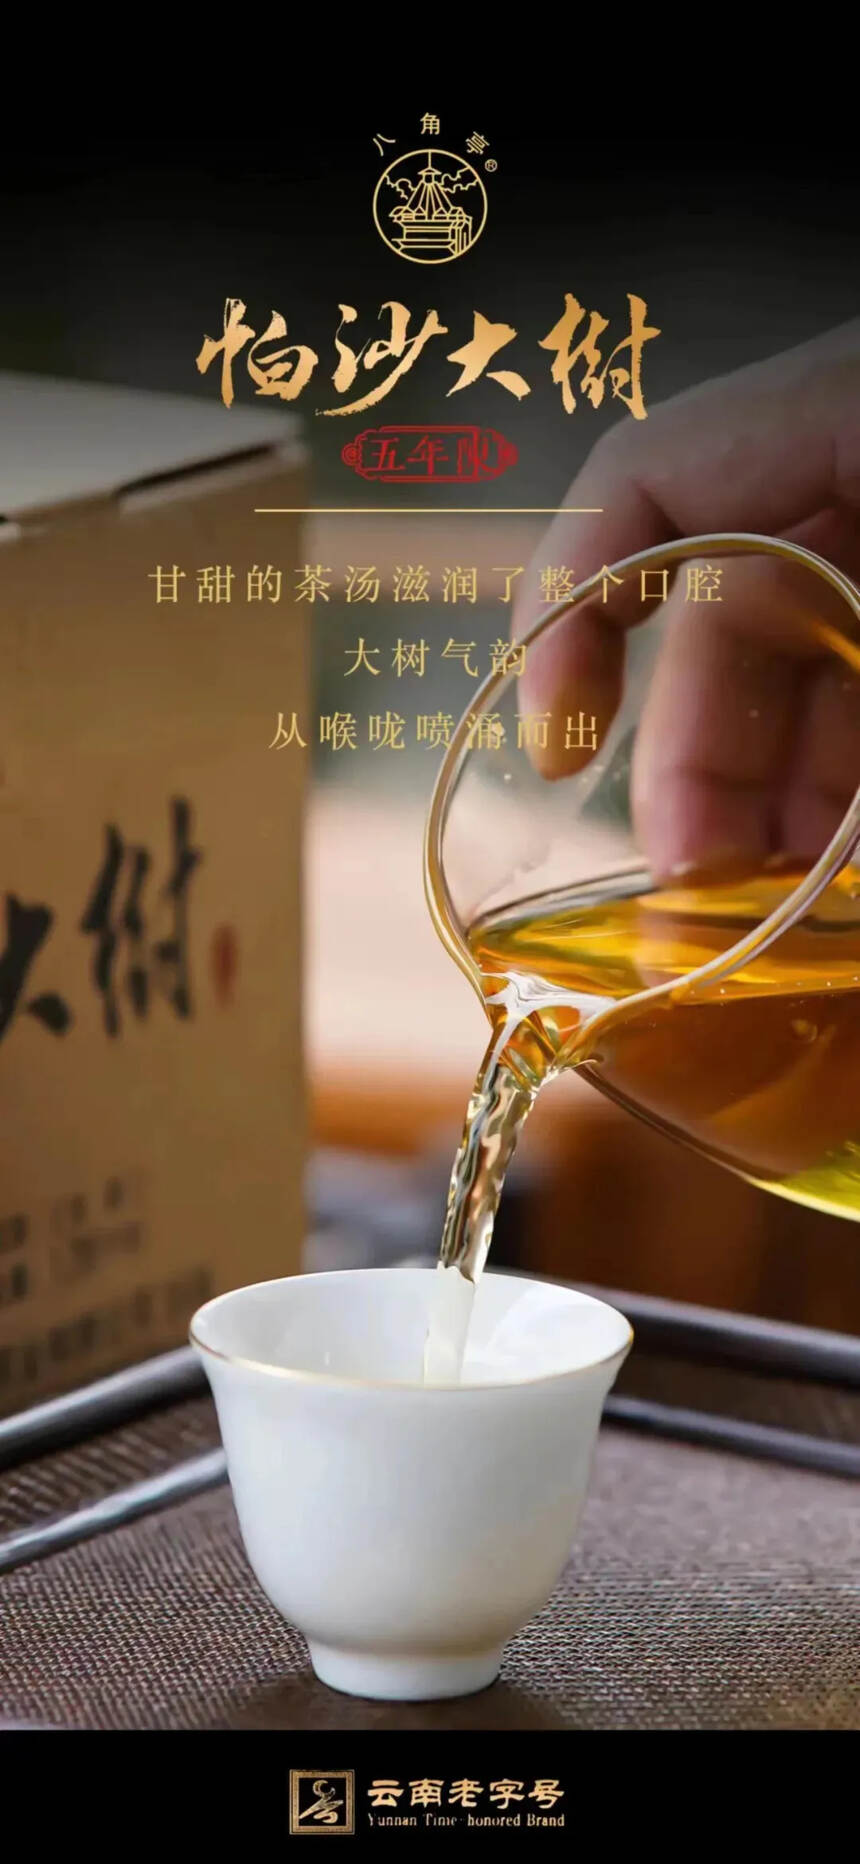 八角亭帕沙大树茶
精选帕沙五年陈明前春茶精制而成。